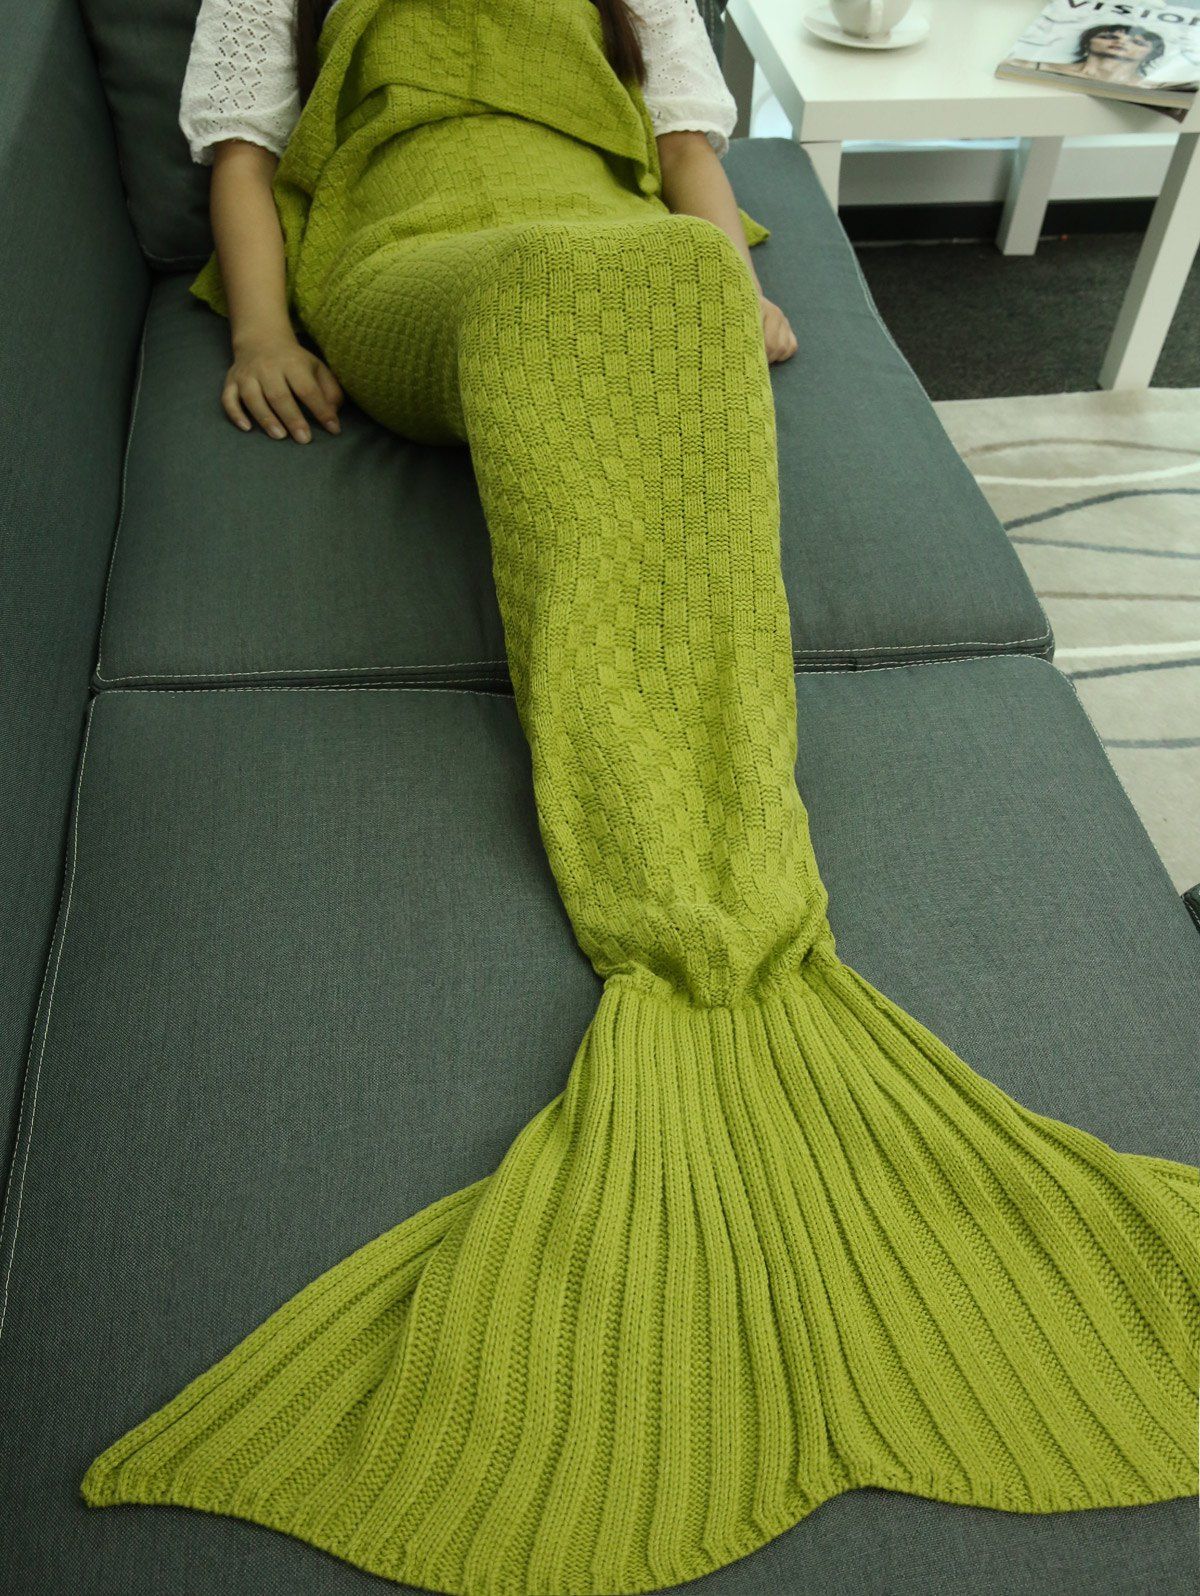 Couverture motif sirène tricotée sac de couchage pour canapé Turquoise 